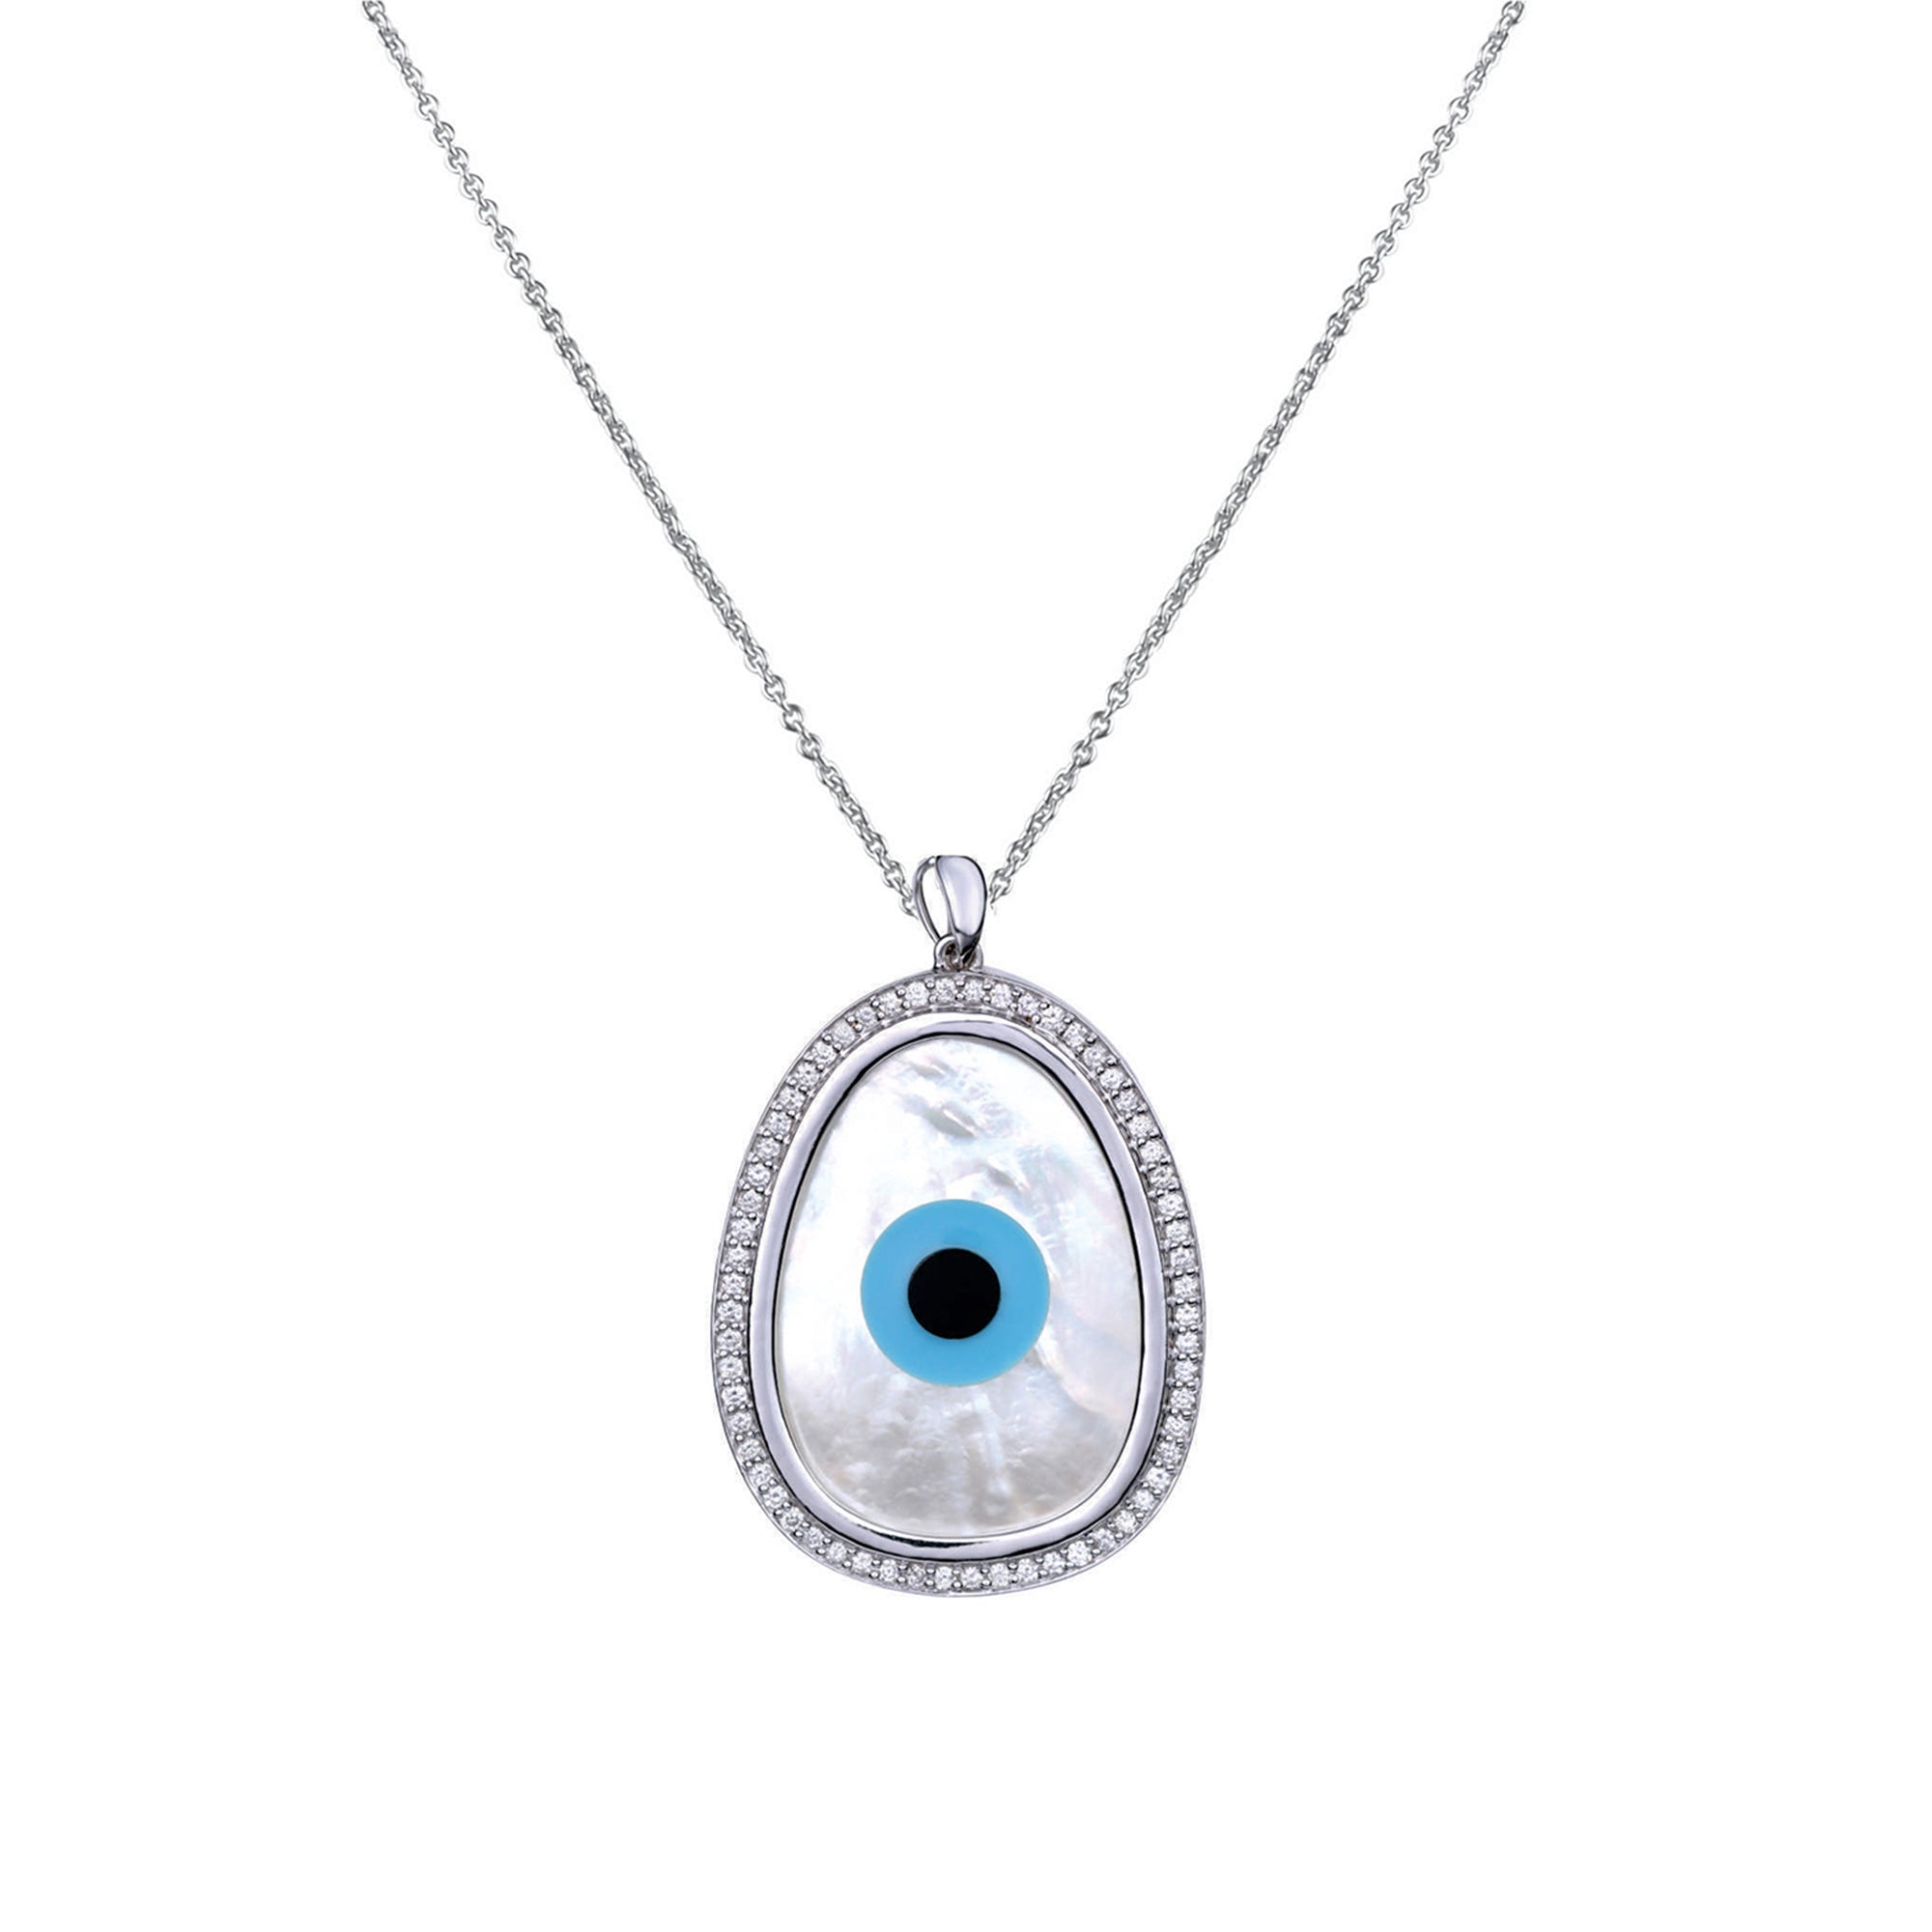 Oblong Evil Eye Diamond Chain Pendant